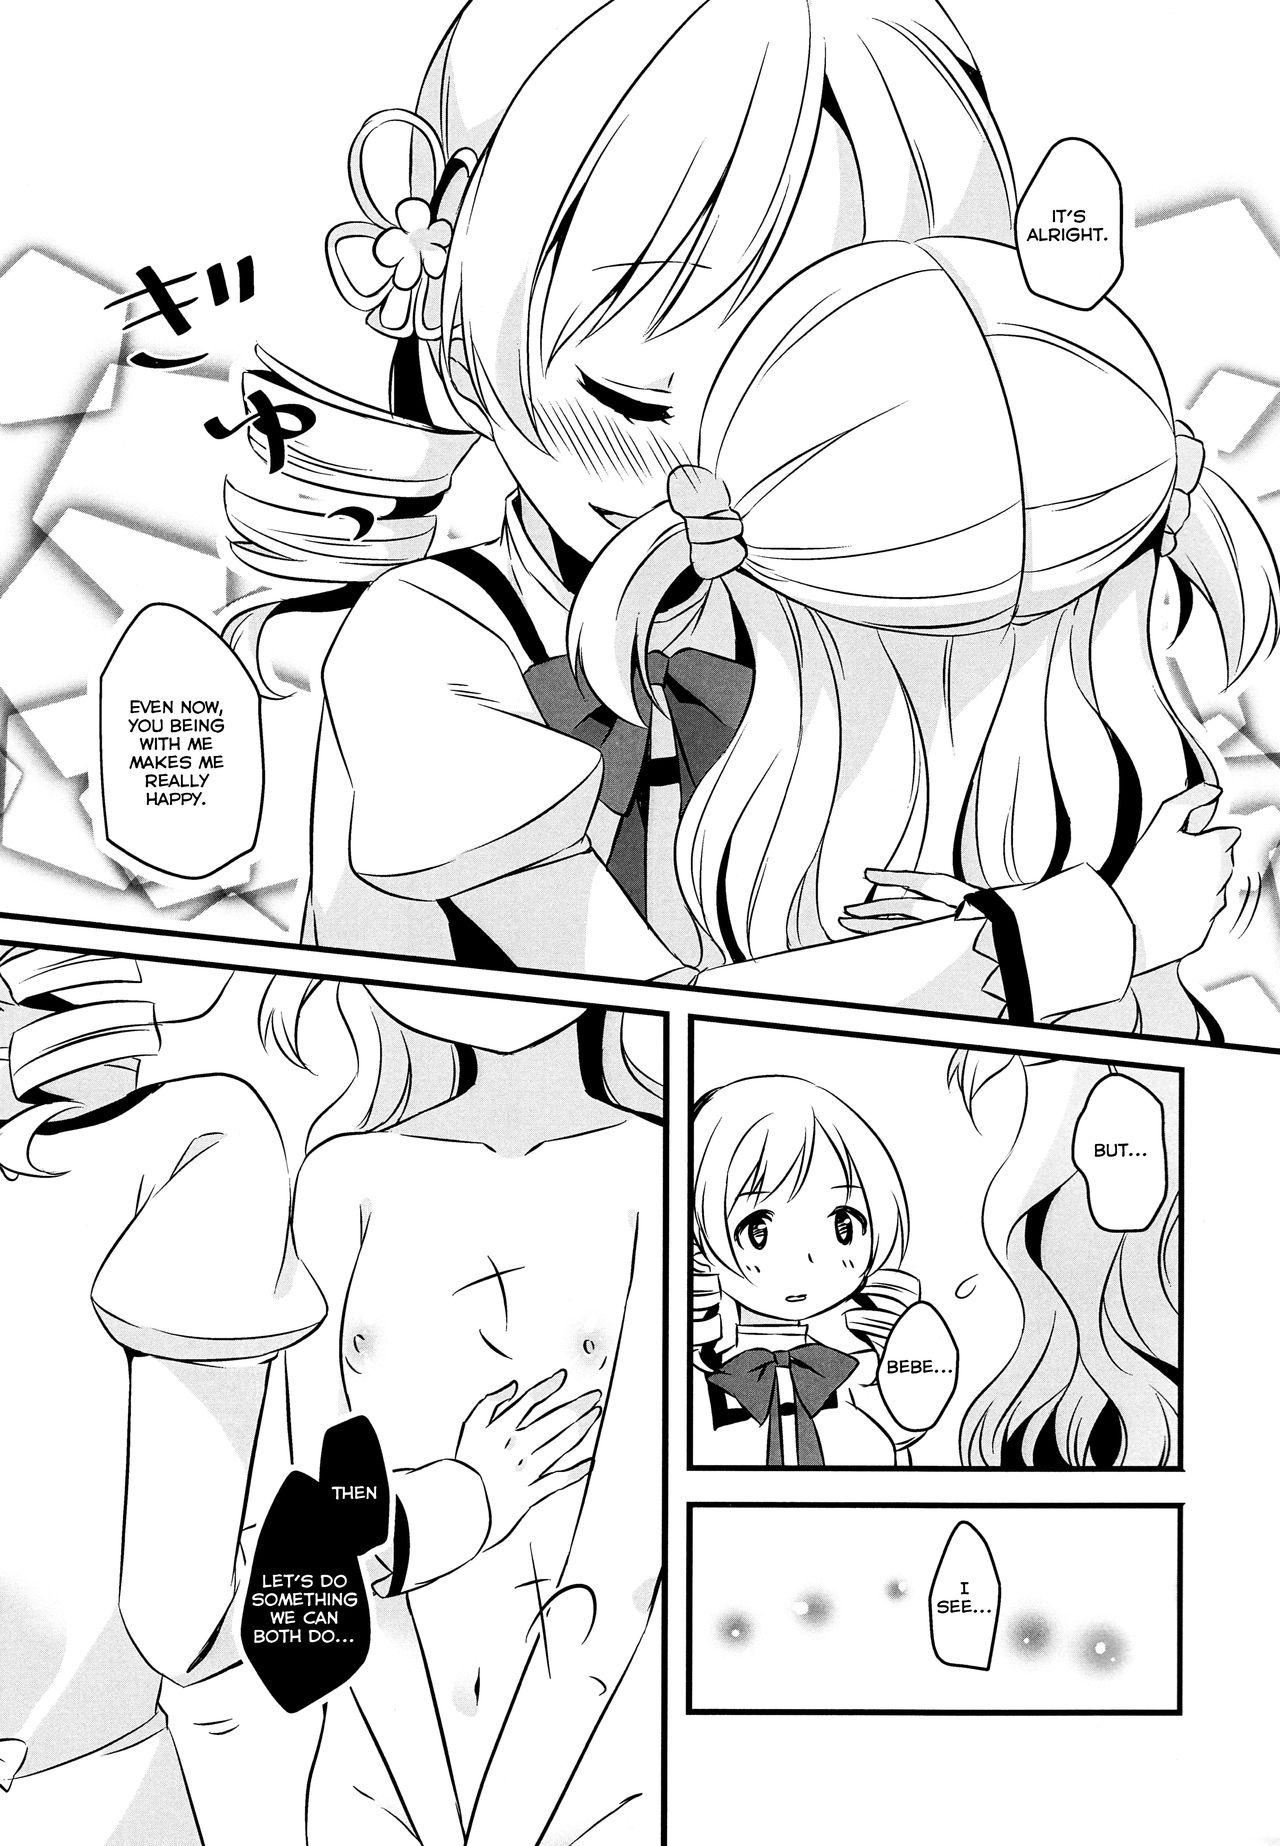 Gordita Nagisa wa Mami ga Daisuki nanodesu! - Puella magi madoka magica Tanned - Page 8